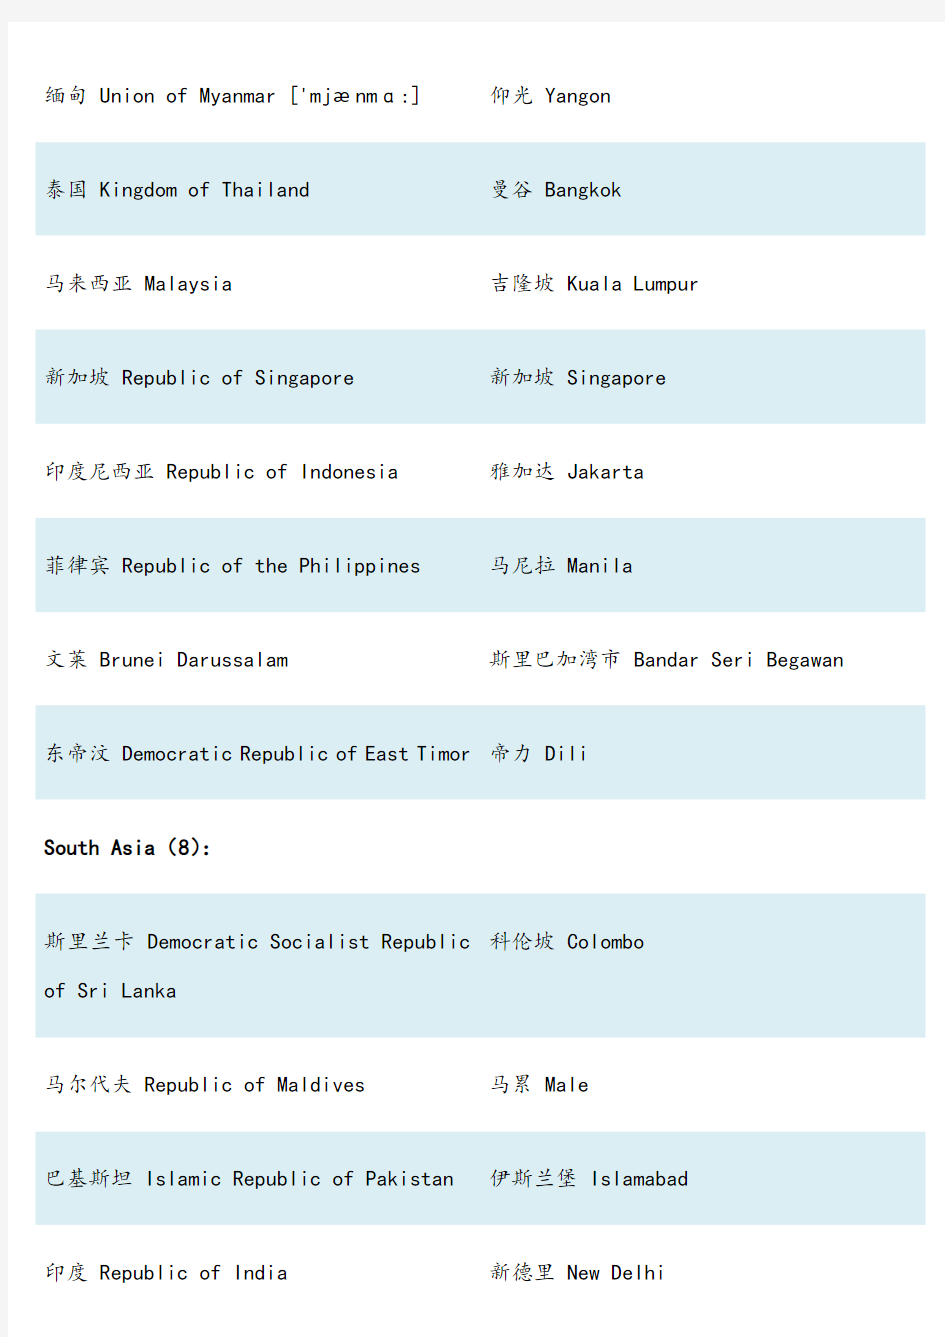 亚洲各国国名及首都中英文对照表